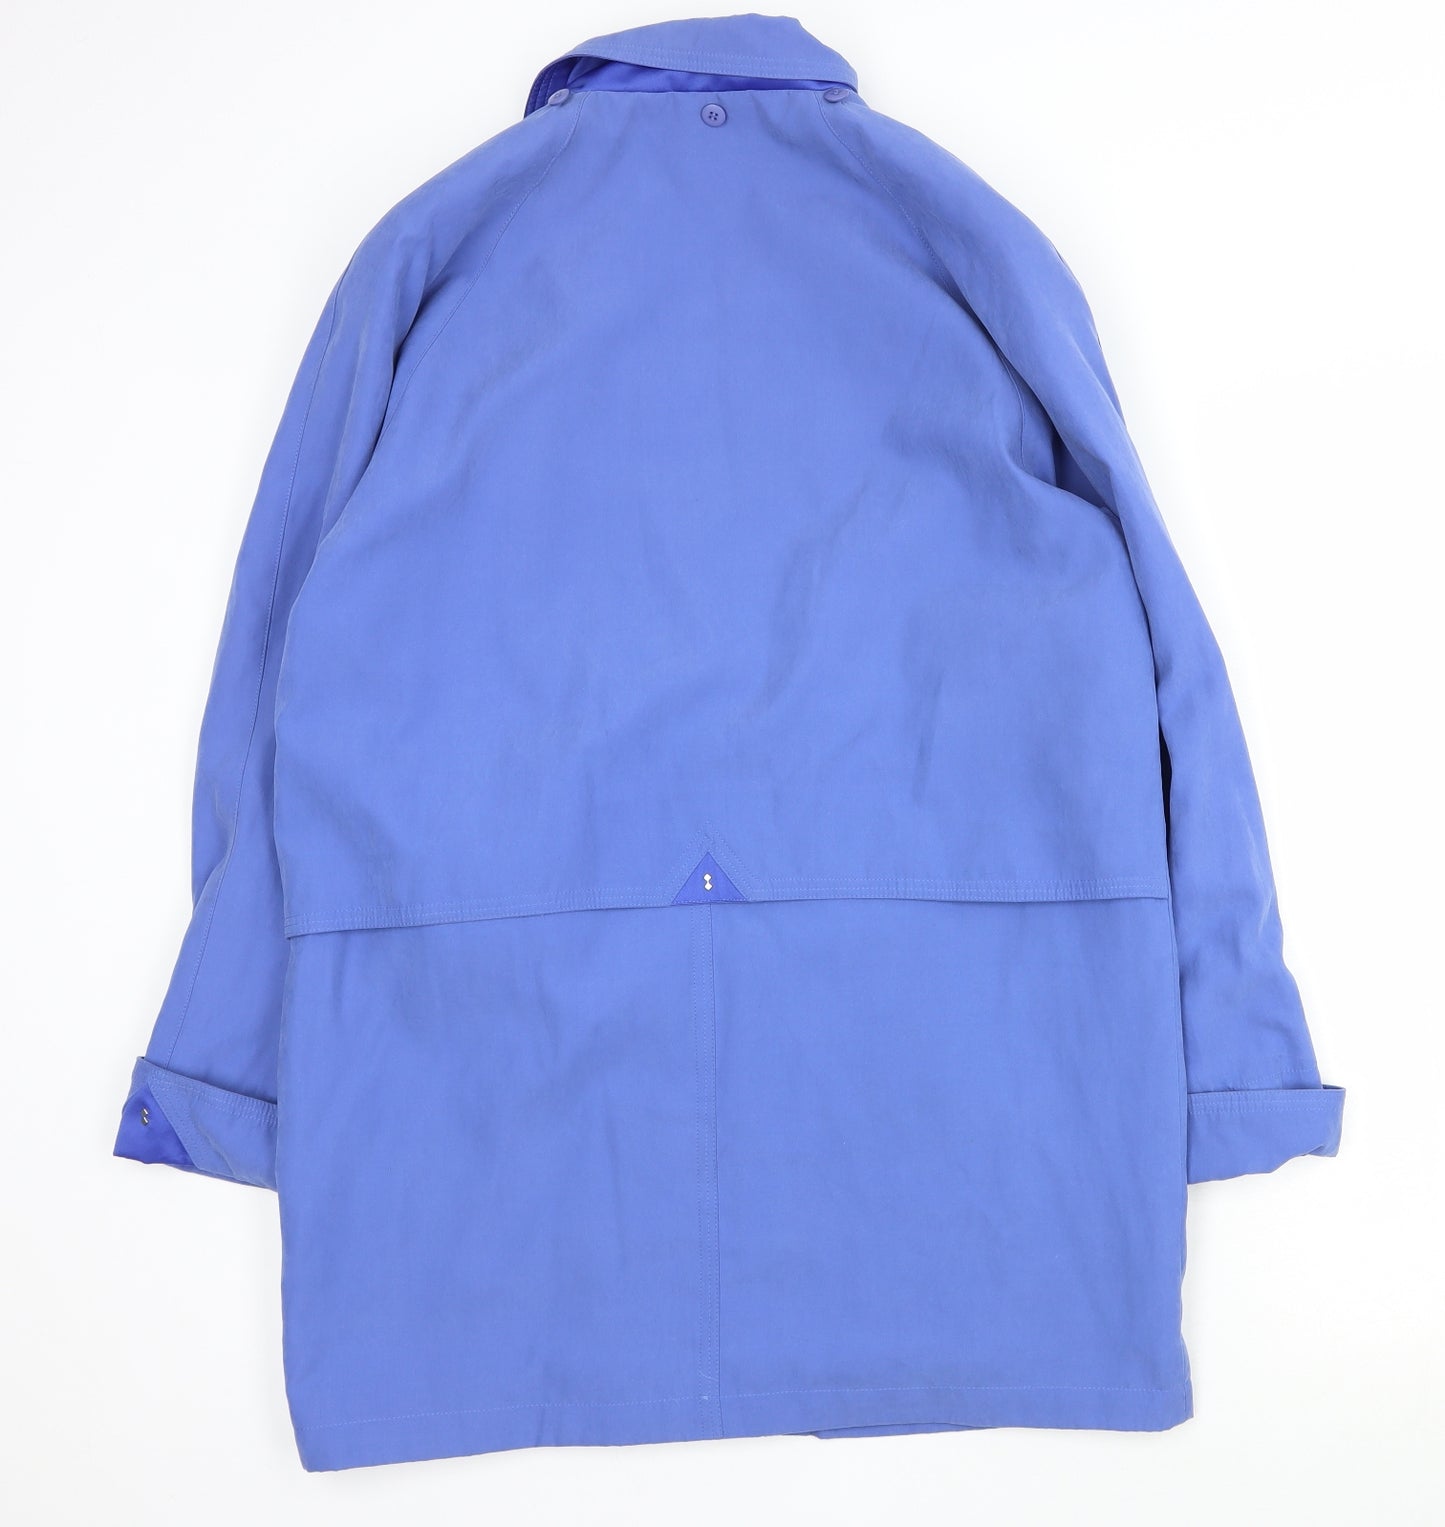 Astraka Womens Blue   Pea Coat Coat Size S  Zip